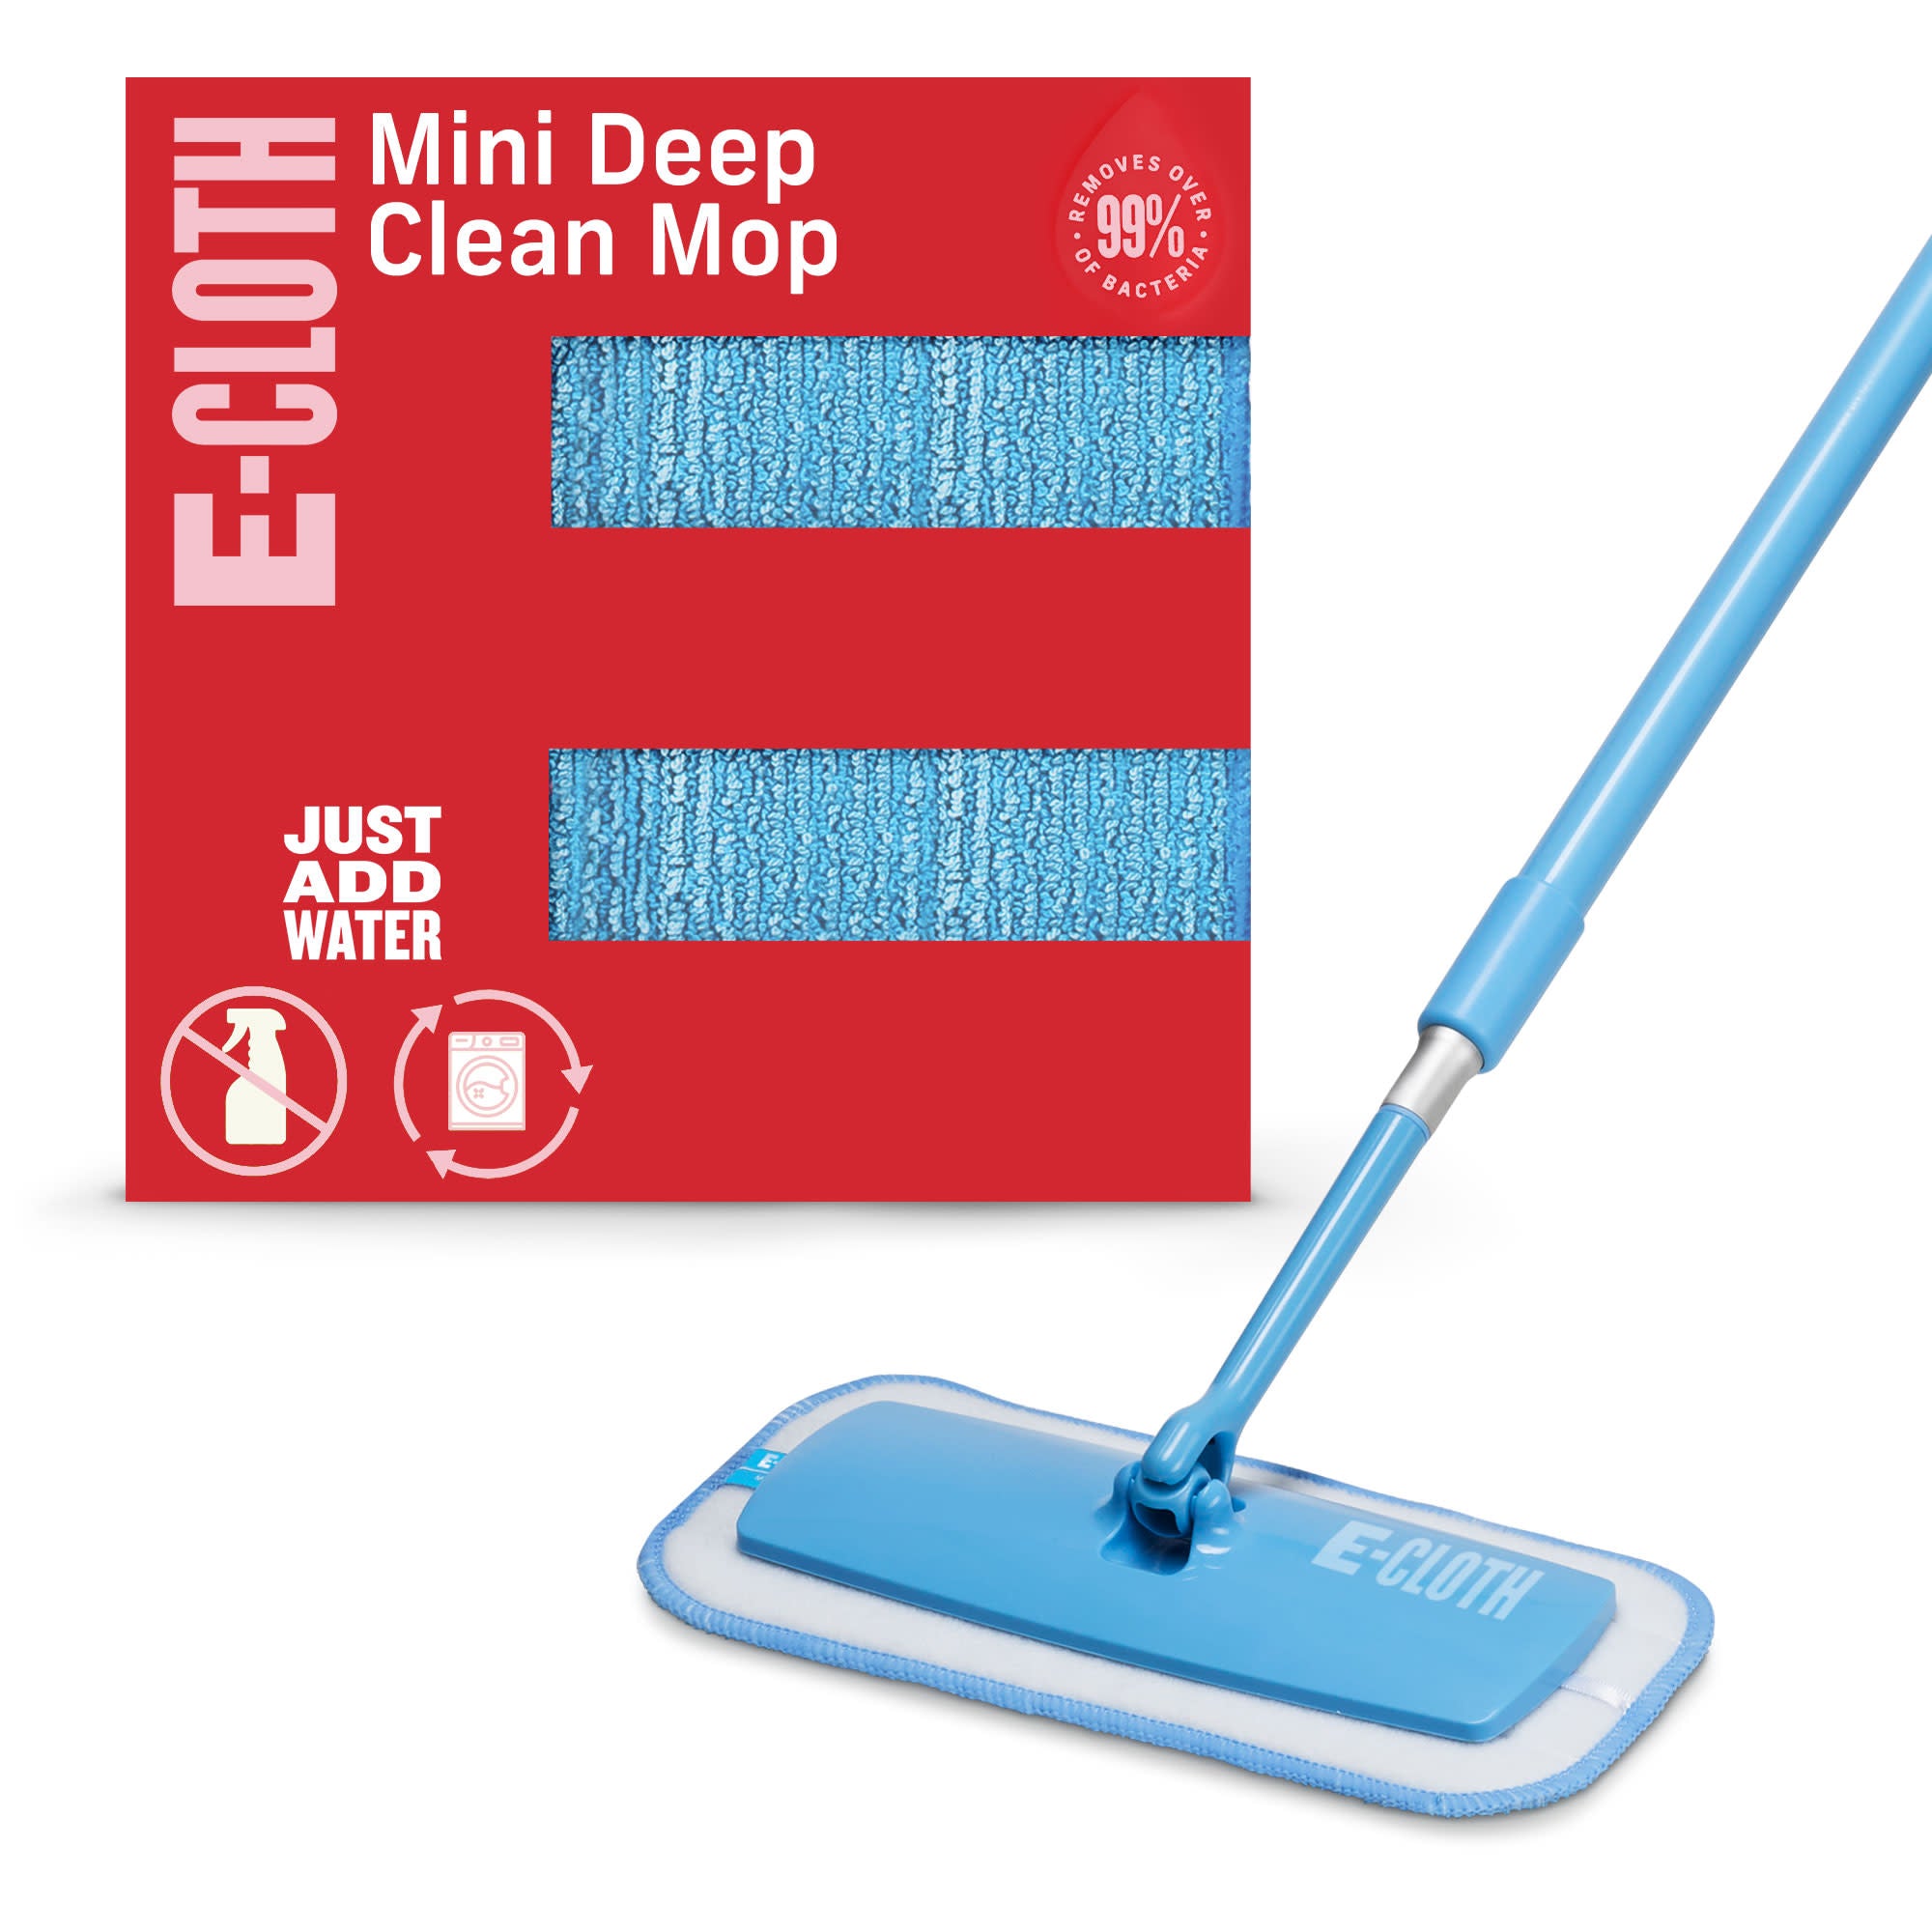 Mini Deep Clean Mop